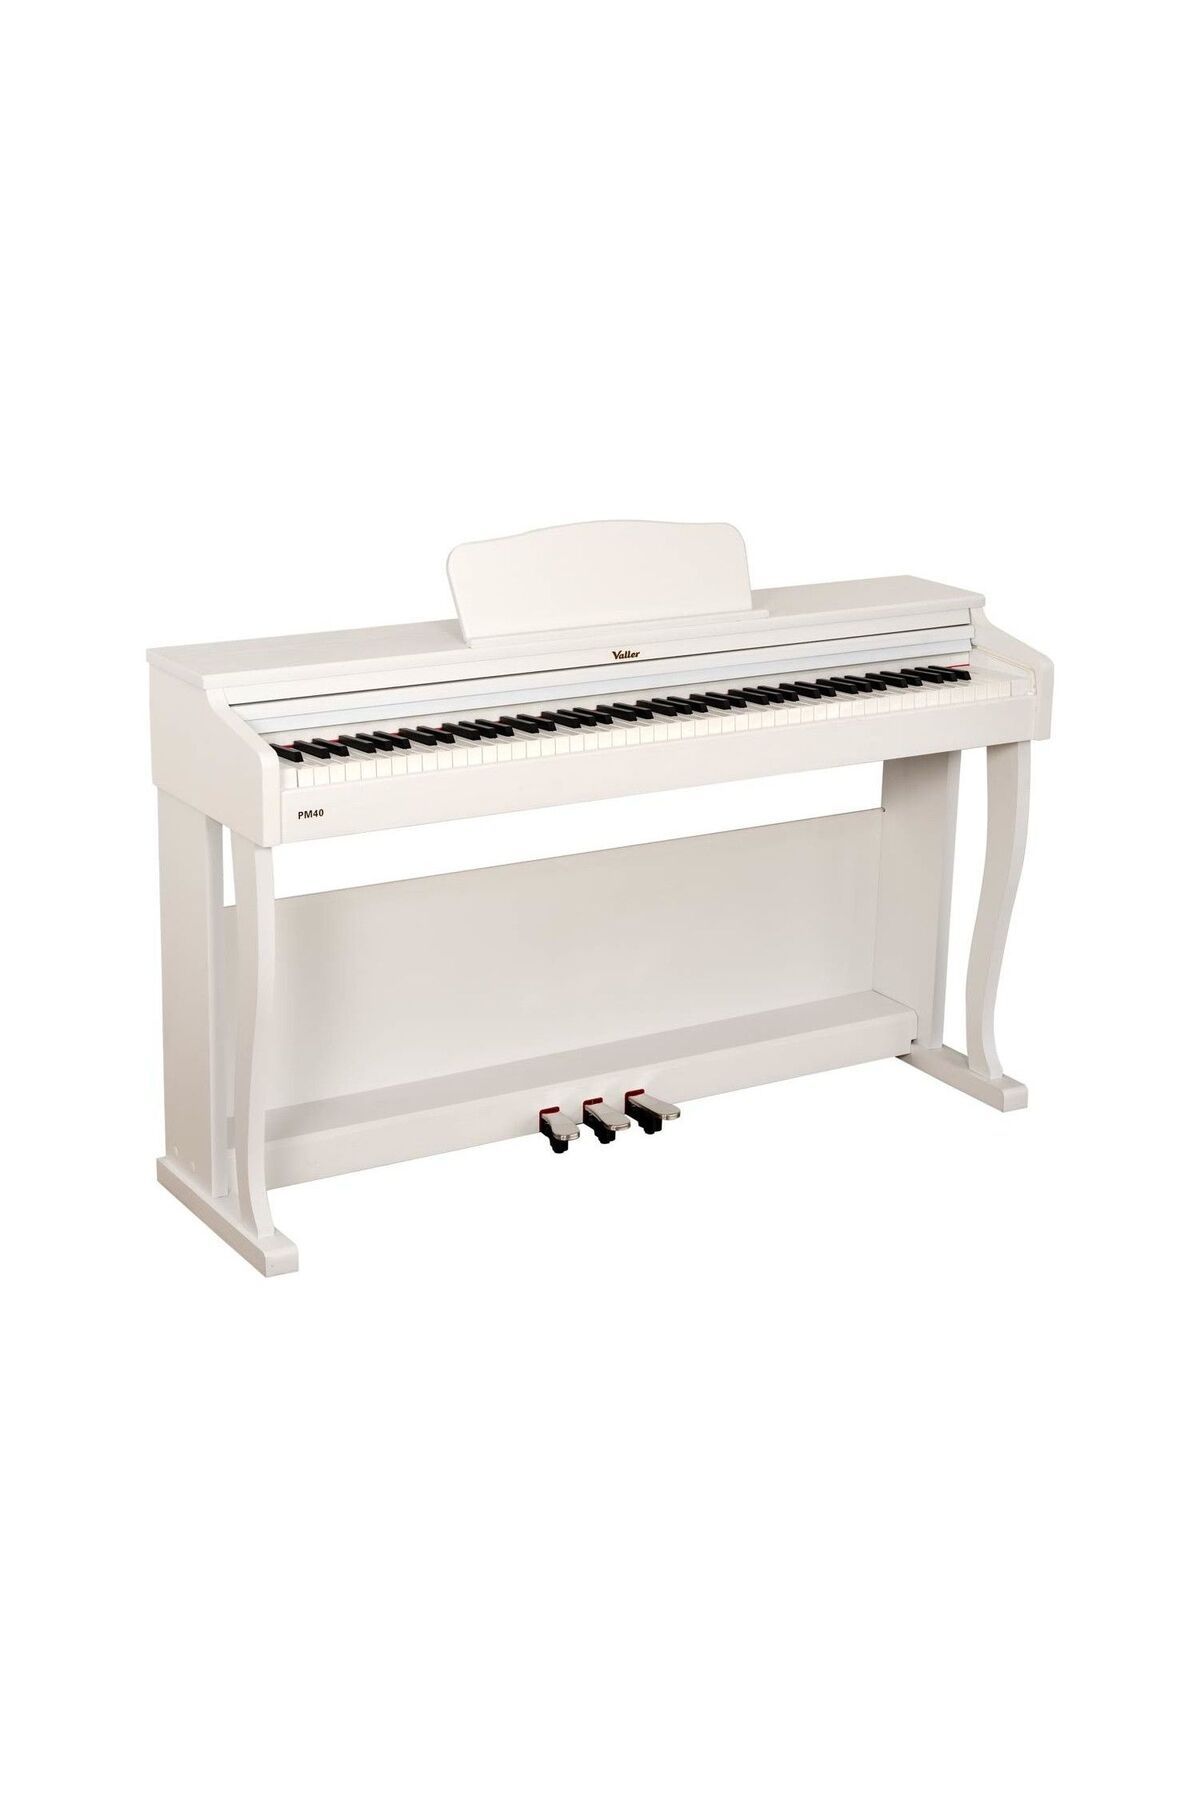 VALLER PM40W Beyaz Tuş Hassasiyetli USB Bağlantılı Dijital Piyano